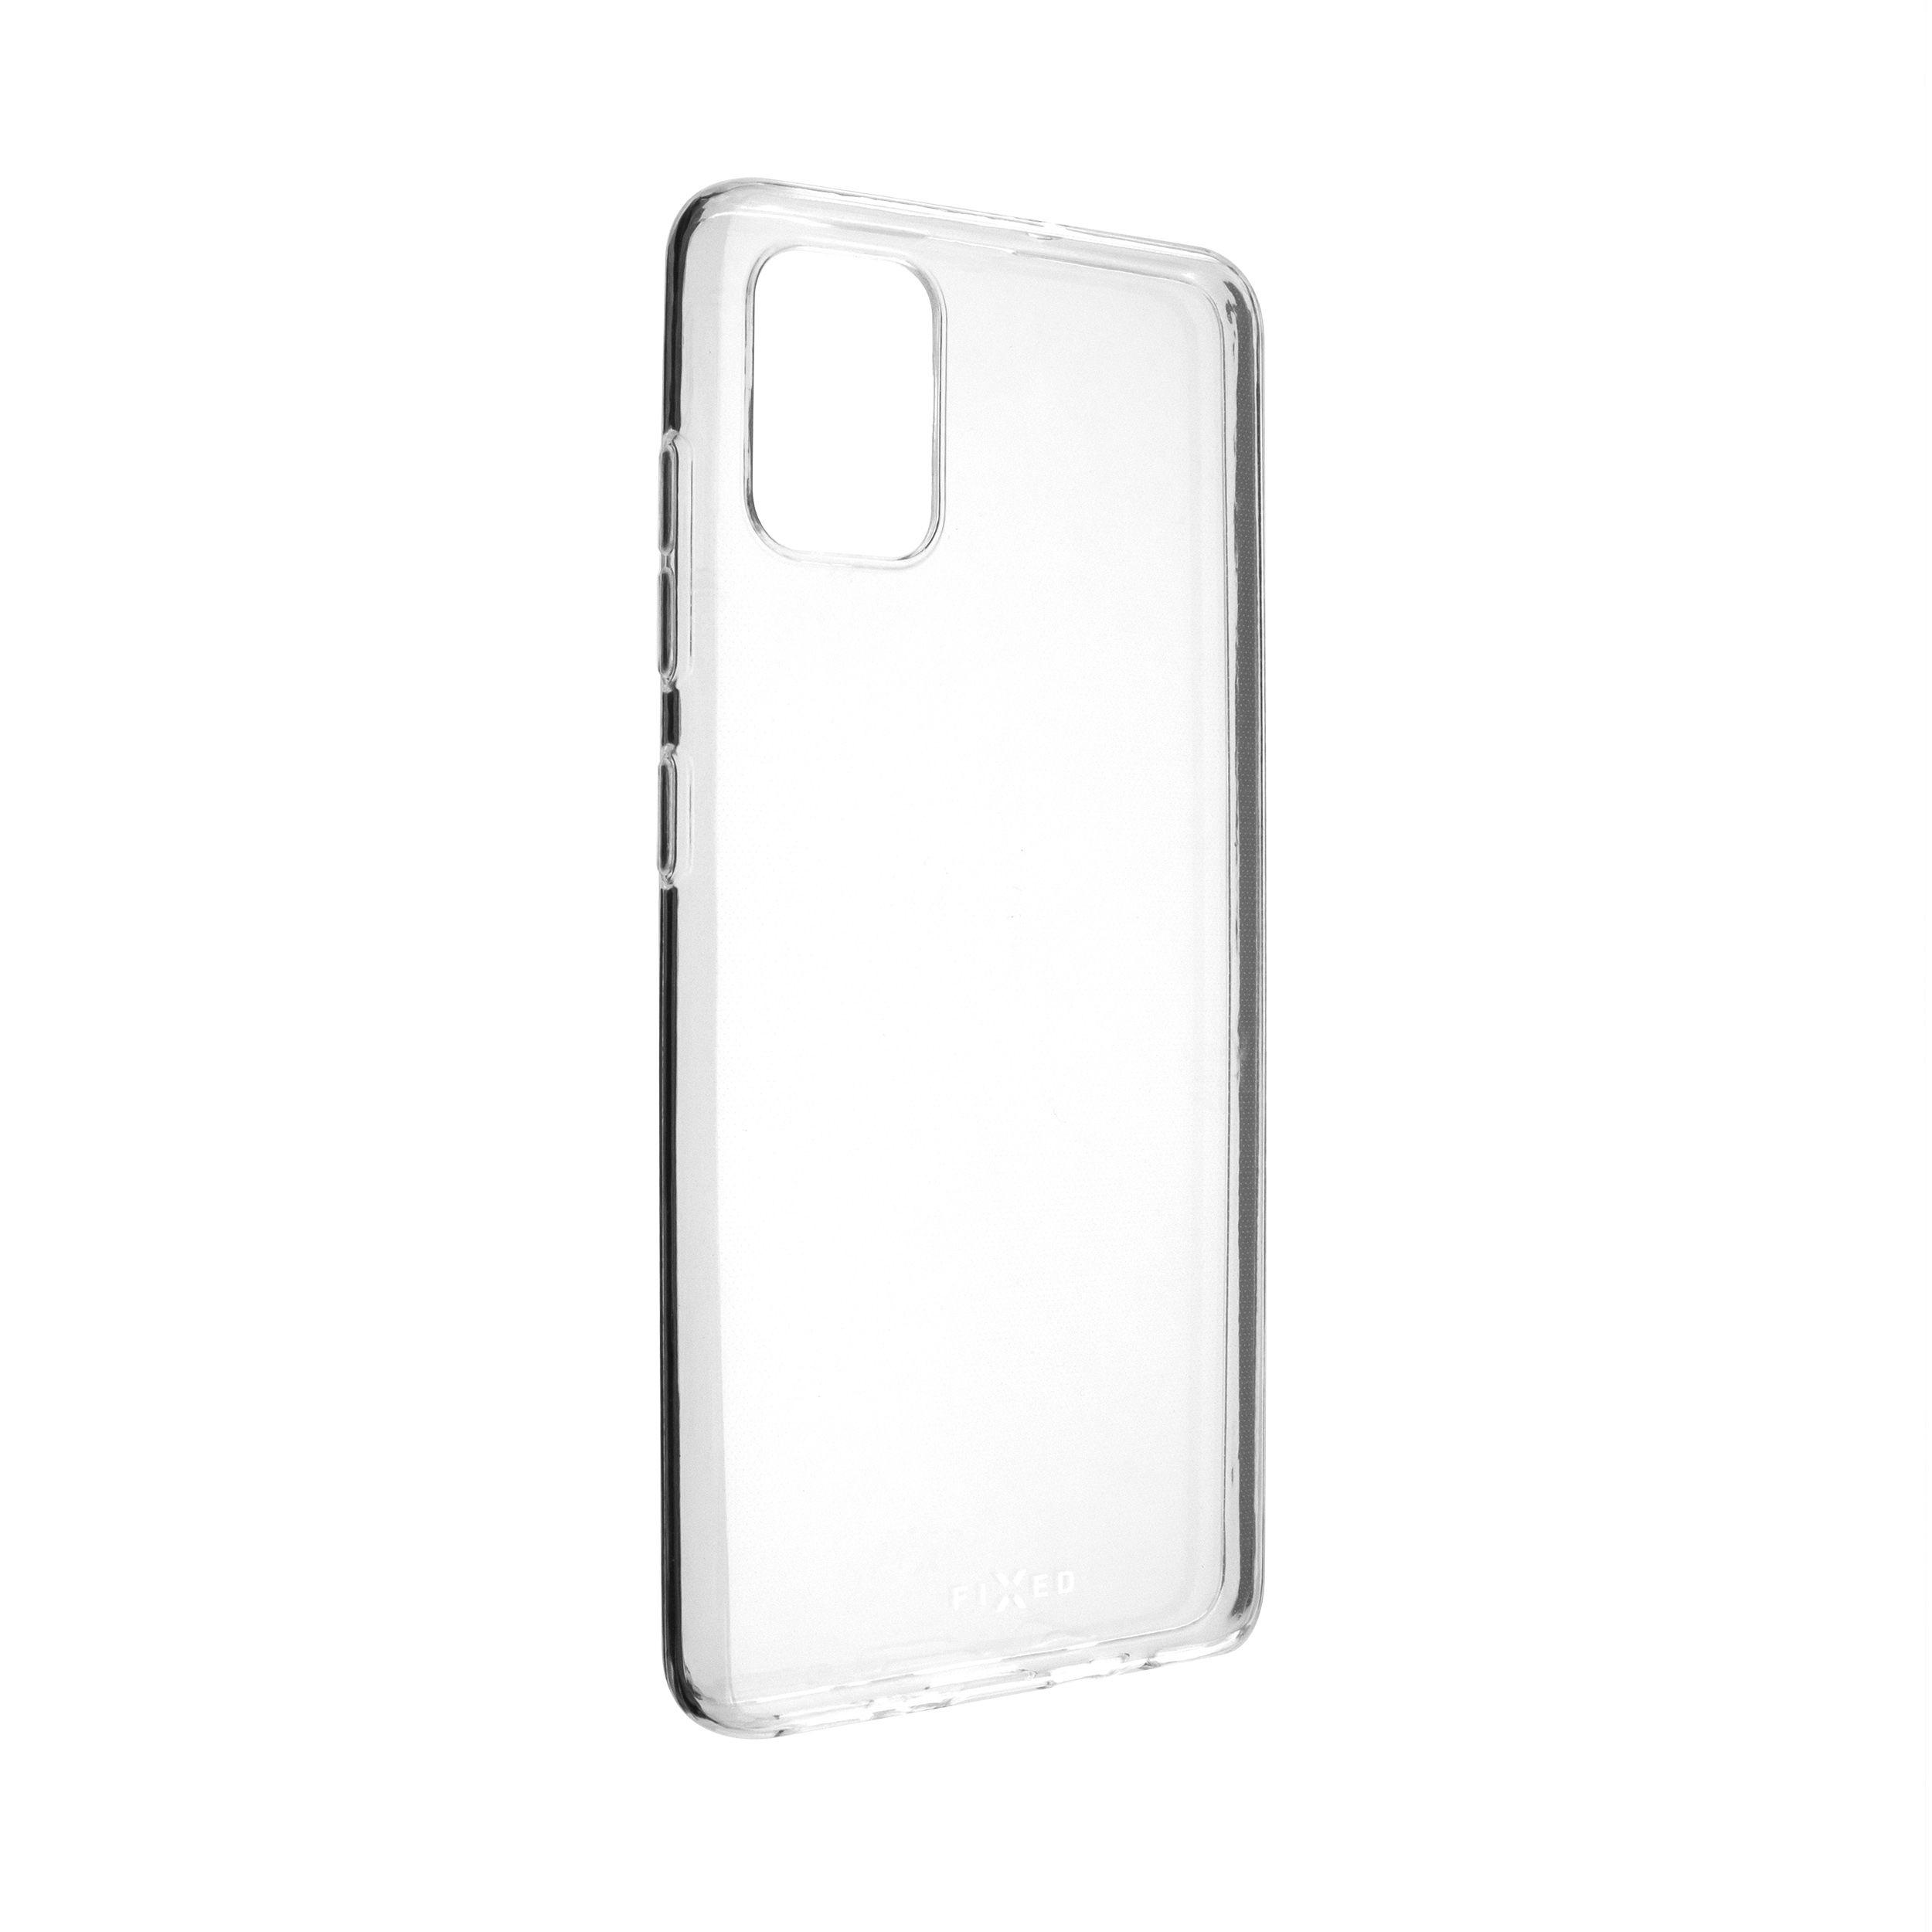 TPU gelové pouzdro pro Samsung Galaxy A51, čiré